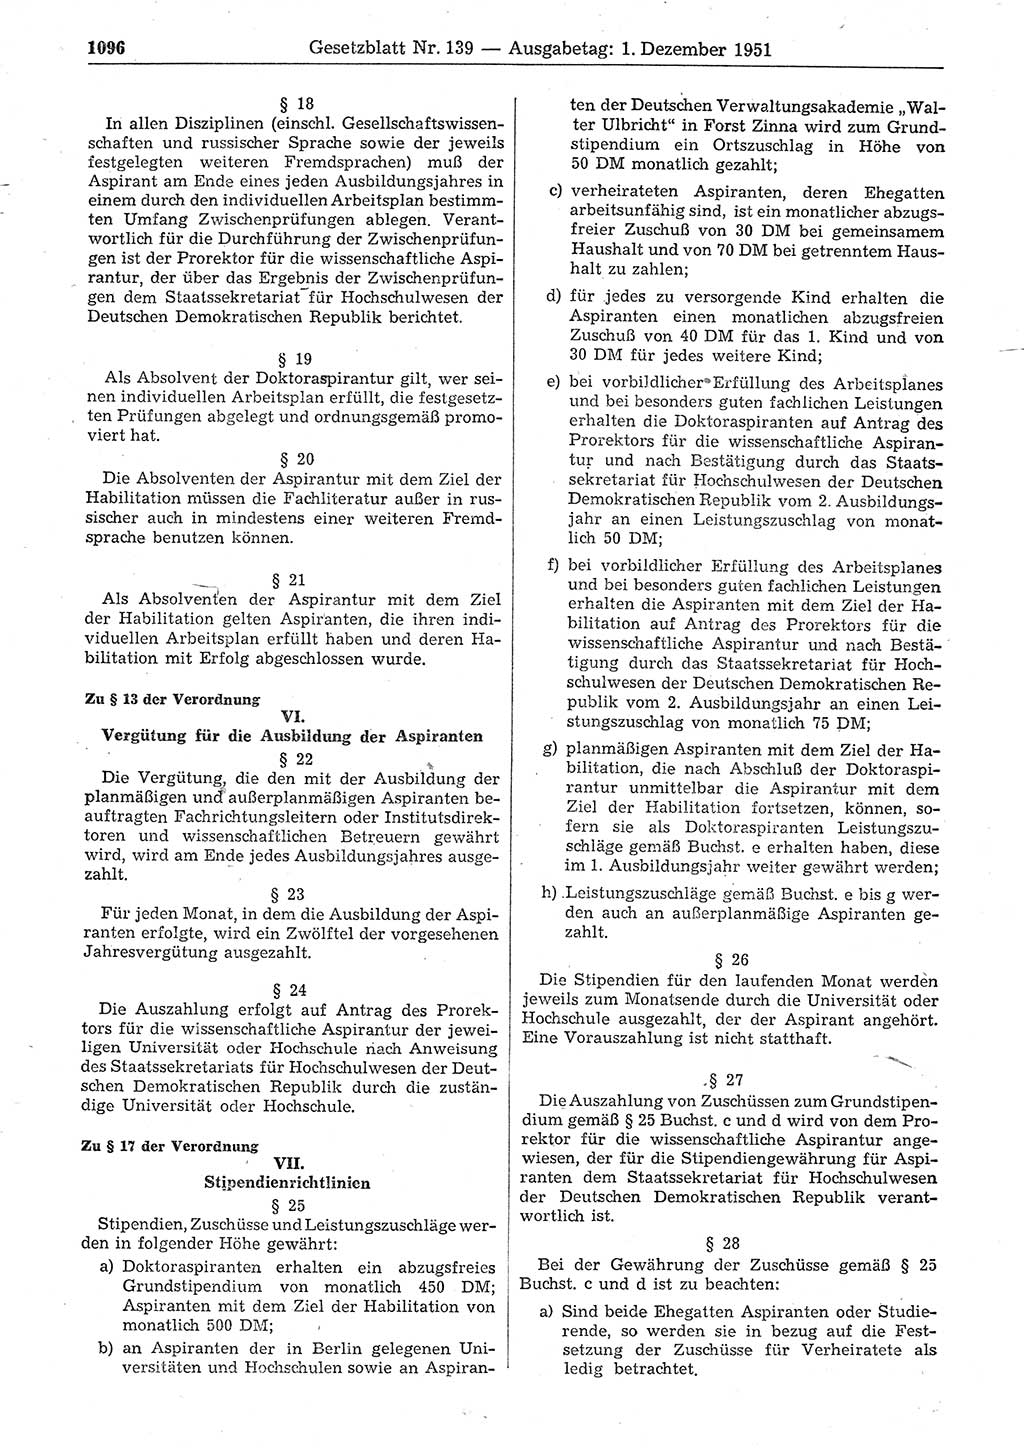 Gesetzblatt (GBl.) der Deutschen Demokratischen Republik (DDR) 1951, Seite 1096 (GBl. DDR 1951, S. 1096)